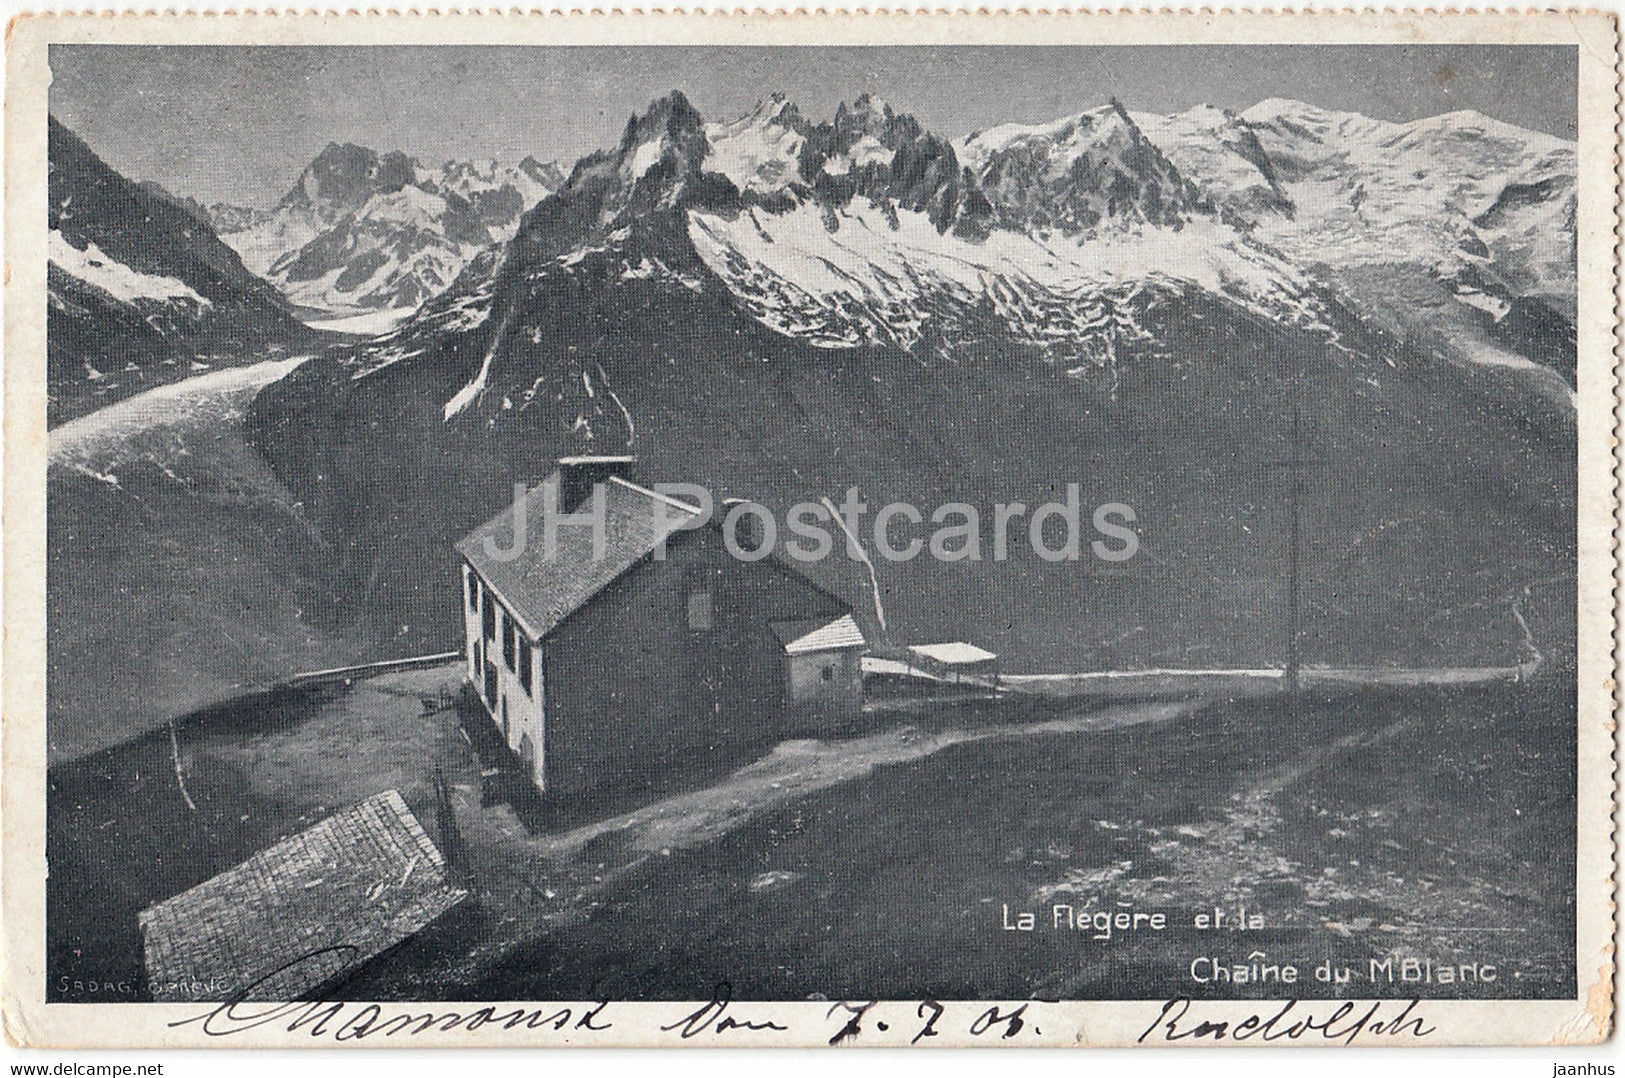 La Flegere et la Chaine du Mont Blanc - Hotel des Alpes Chamonix - old postcard - 1905 - France - used - JH Postcards